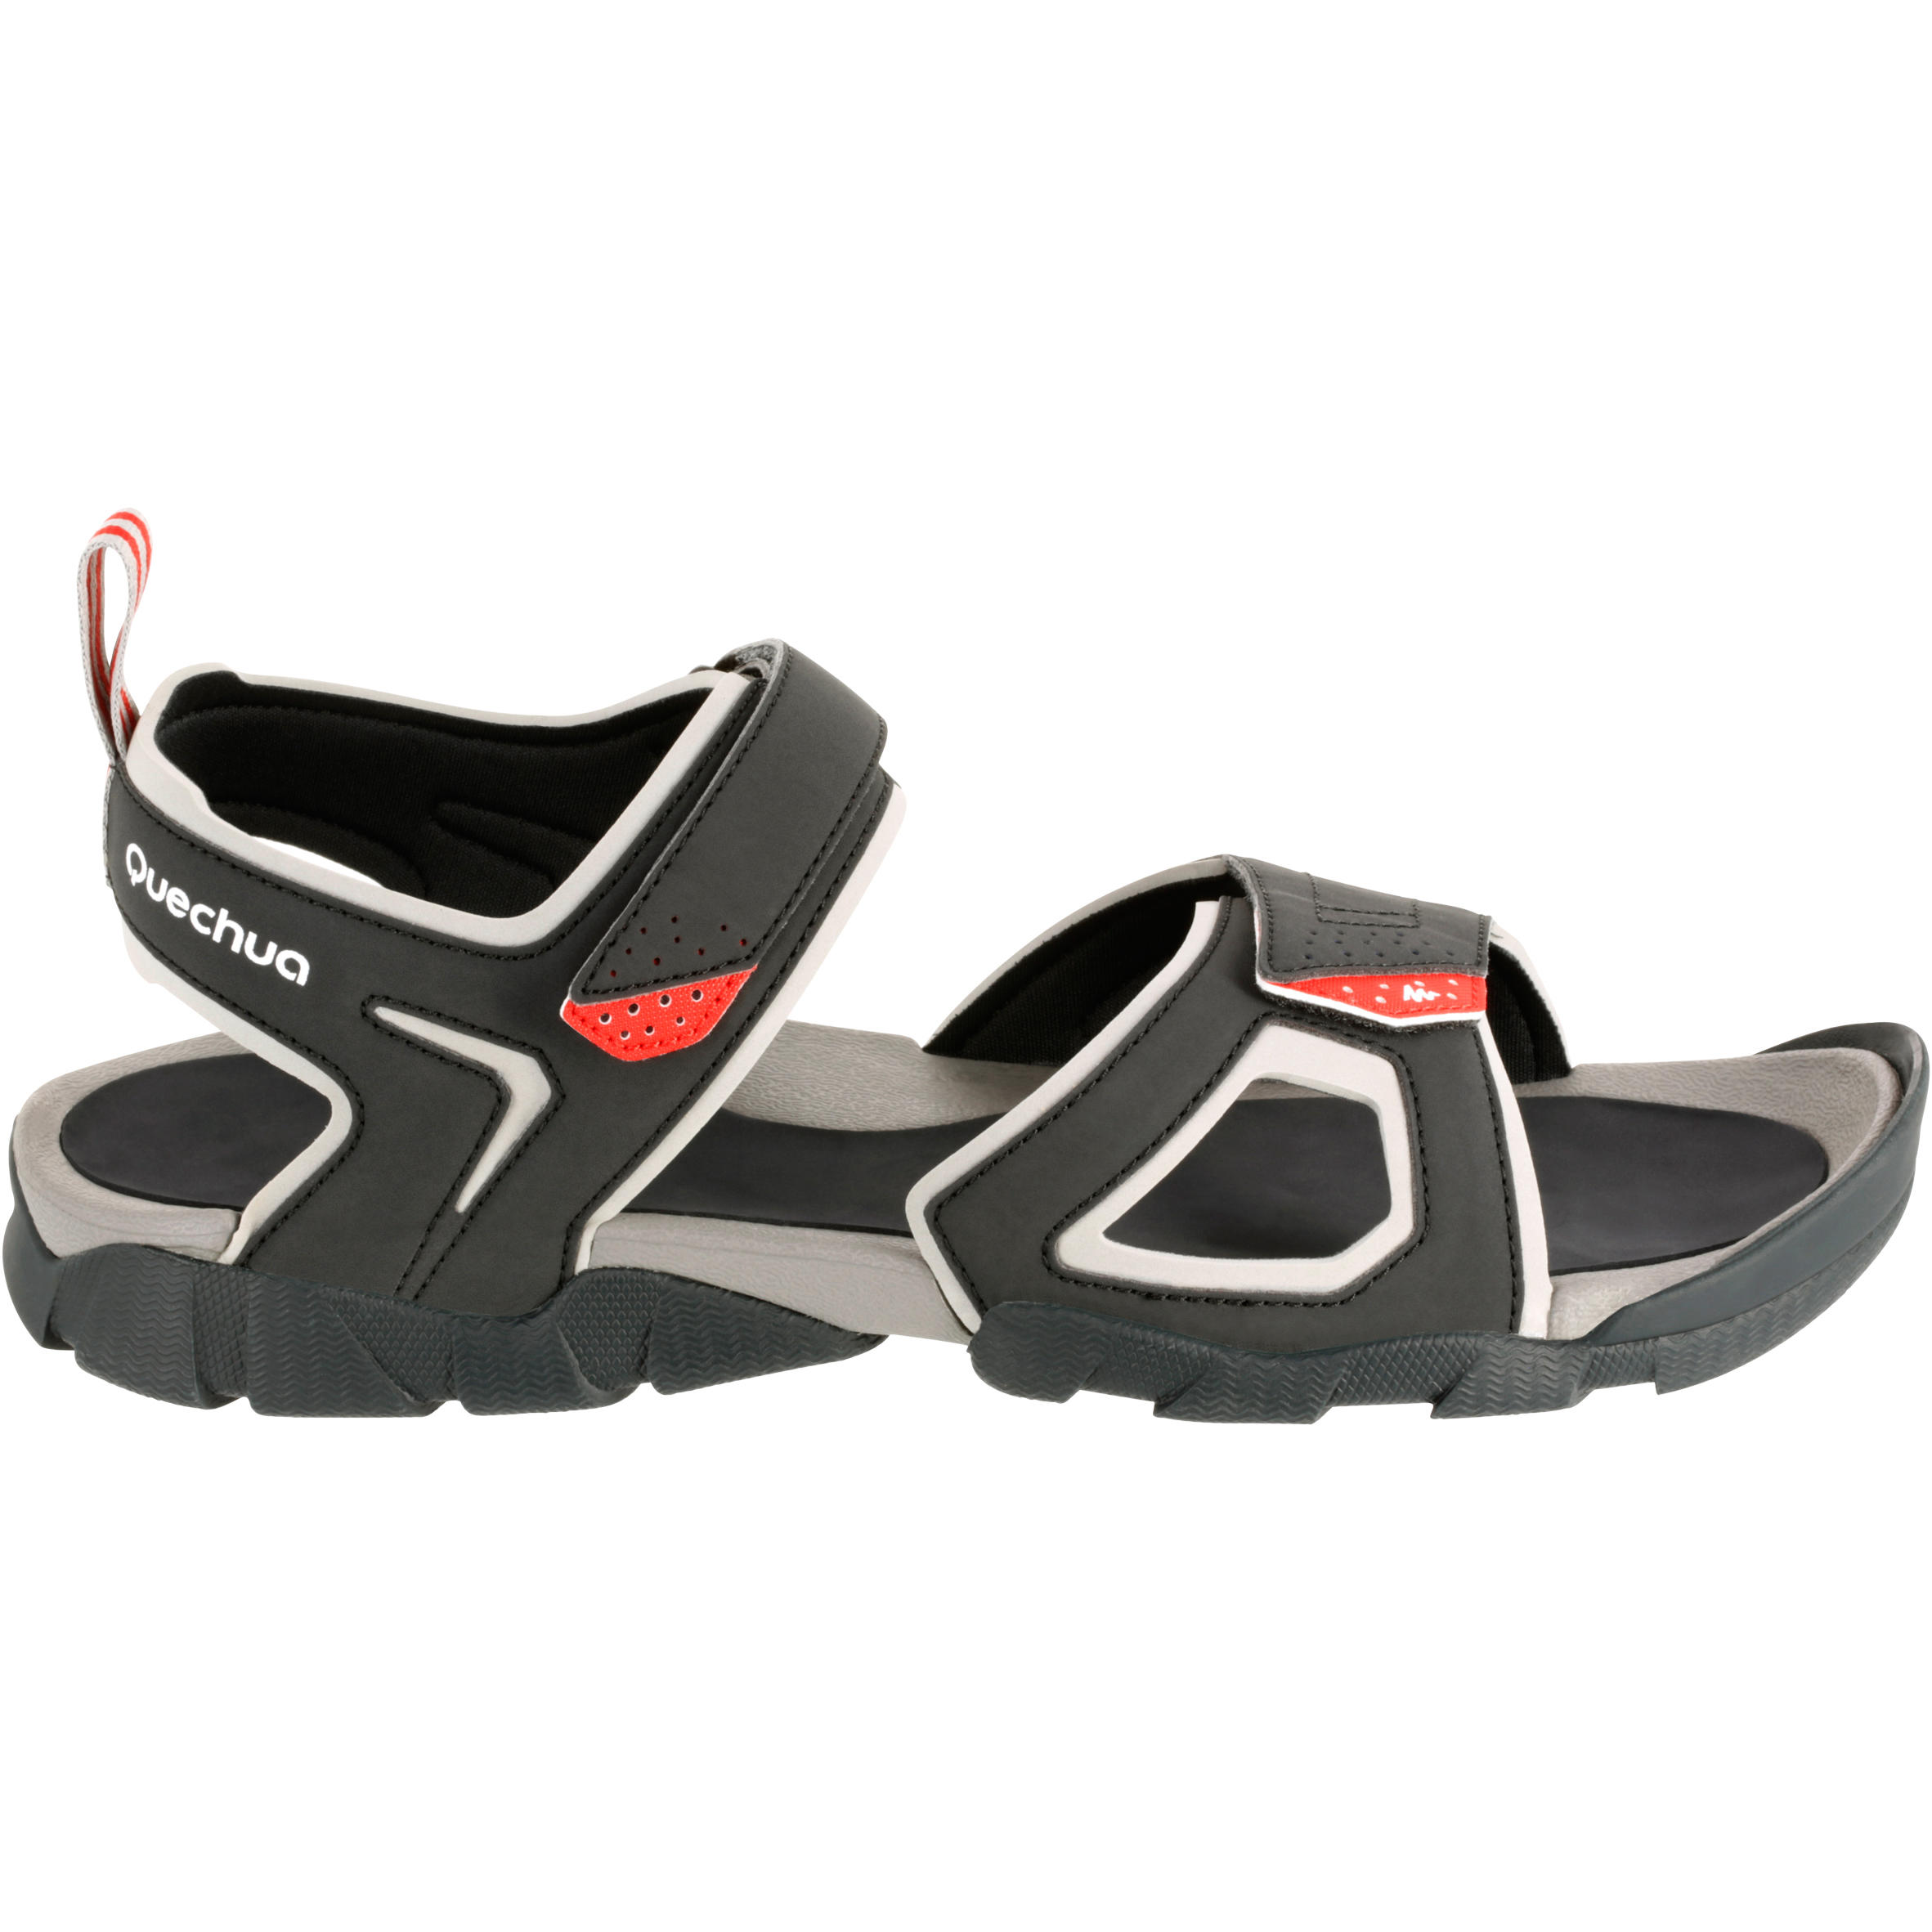 QUECHUA Walking sandals - NH100 - Men's